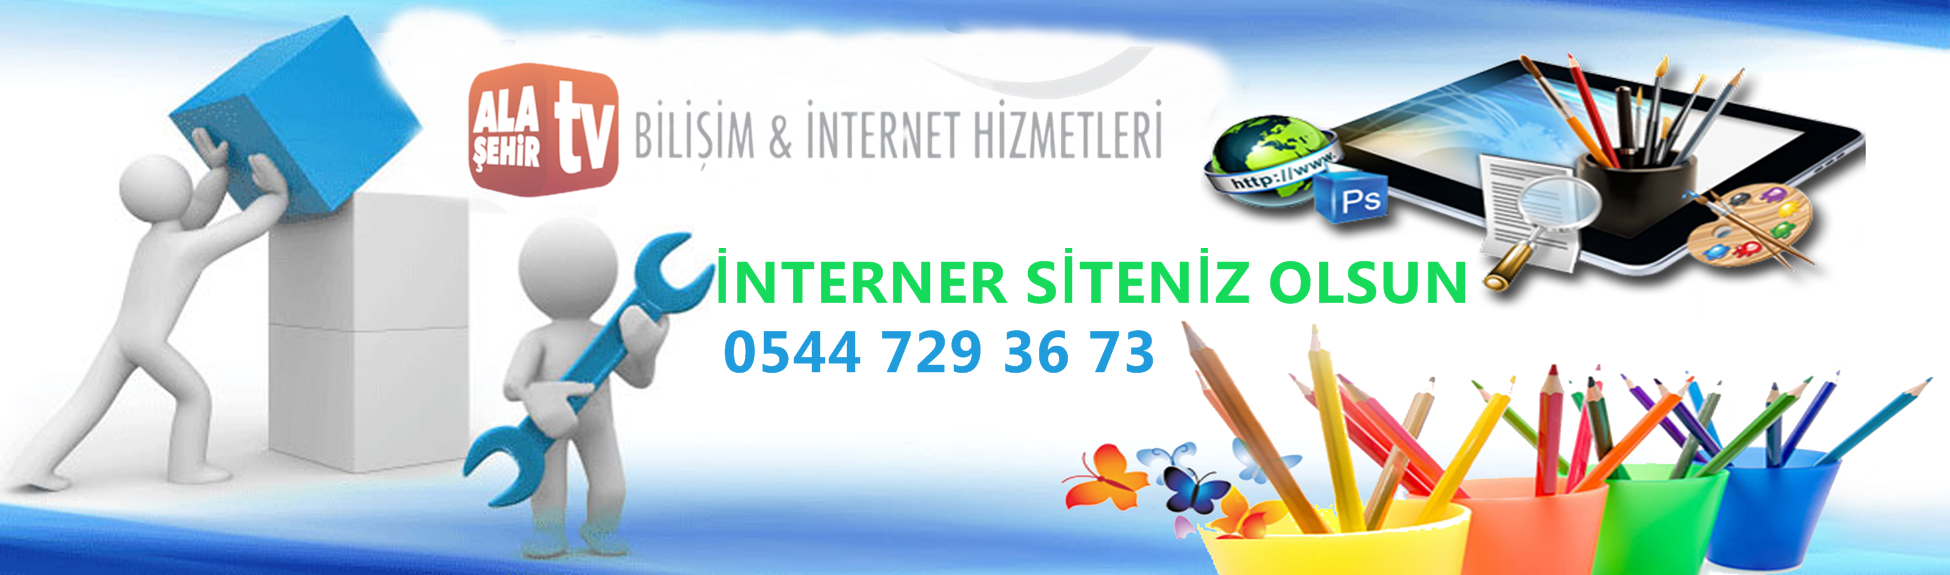 Alaşehir TV İnternet Hizmetleri